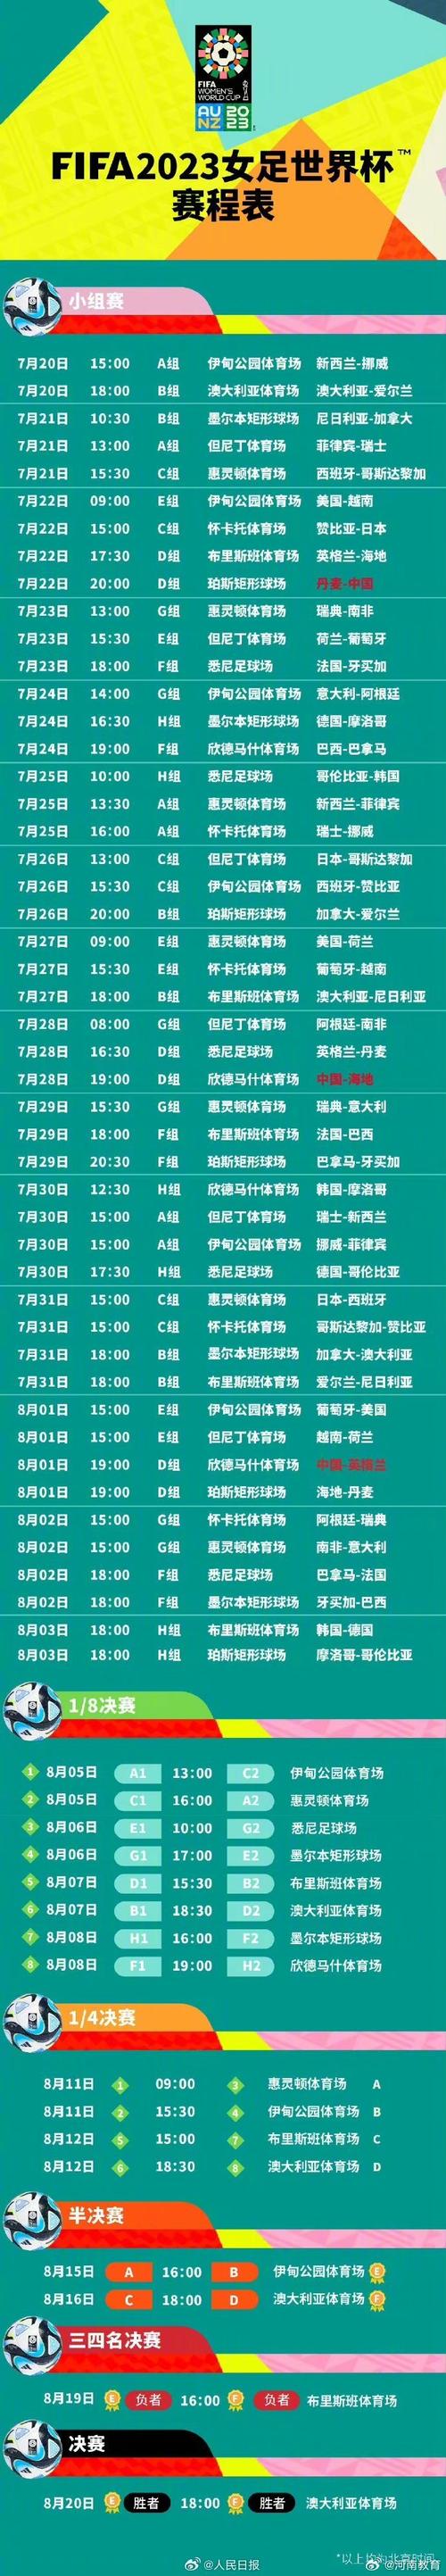 2022世界杯赛程时间表中国队